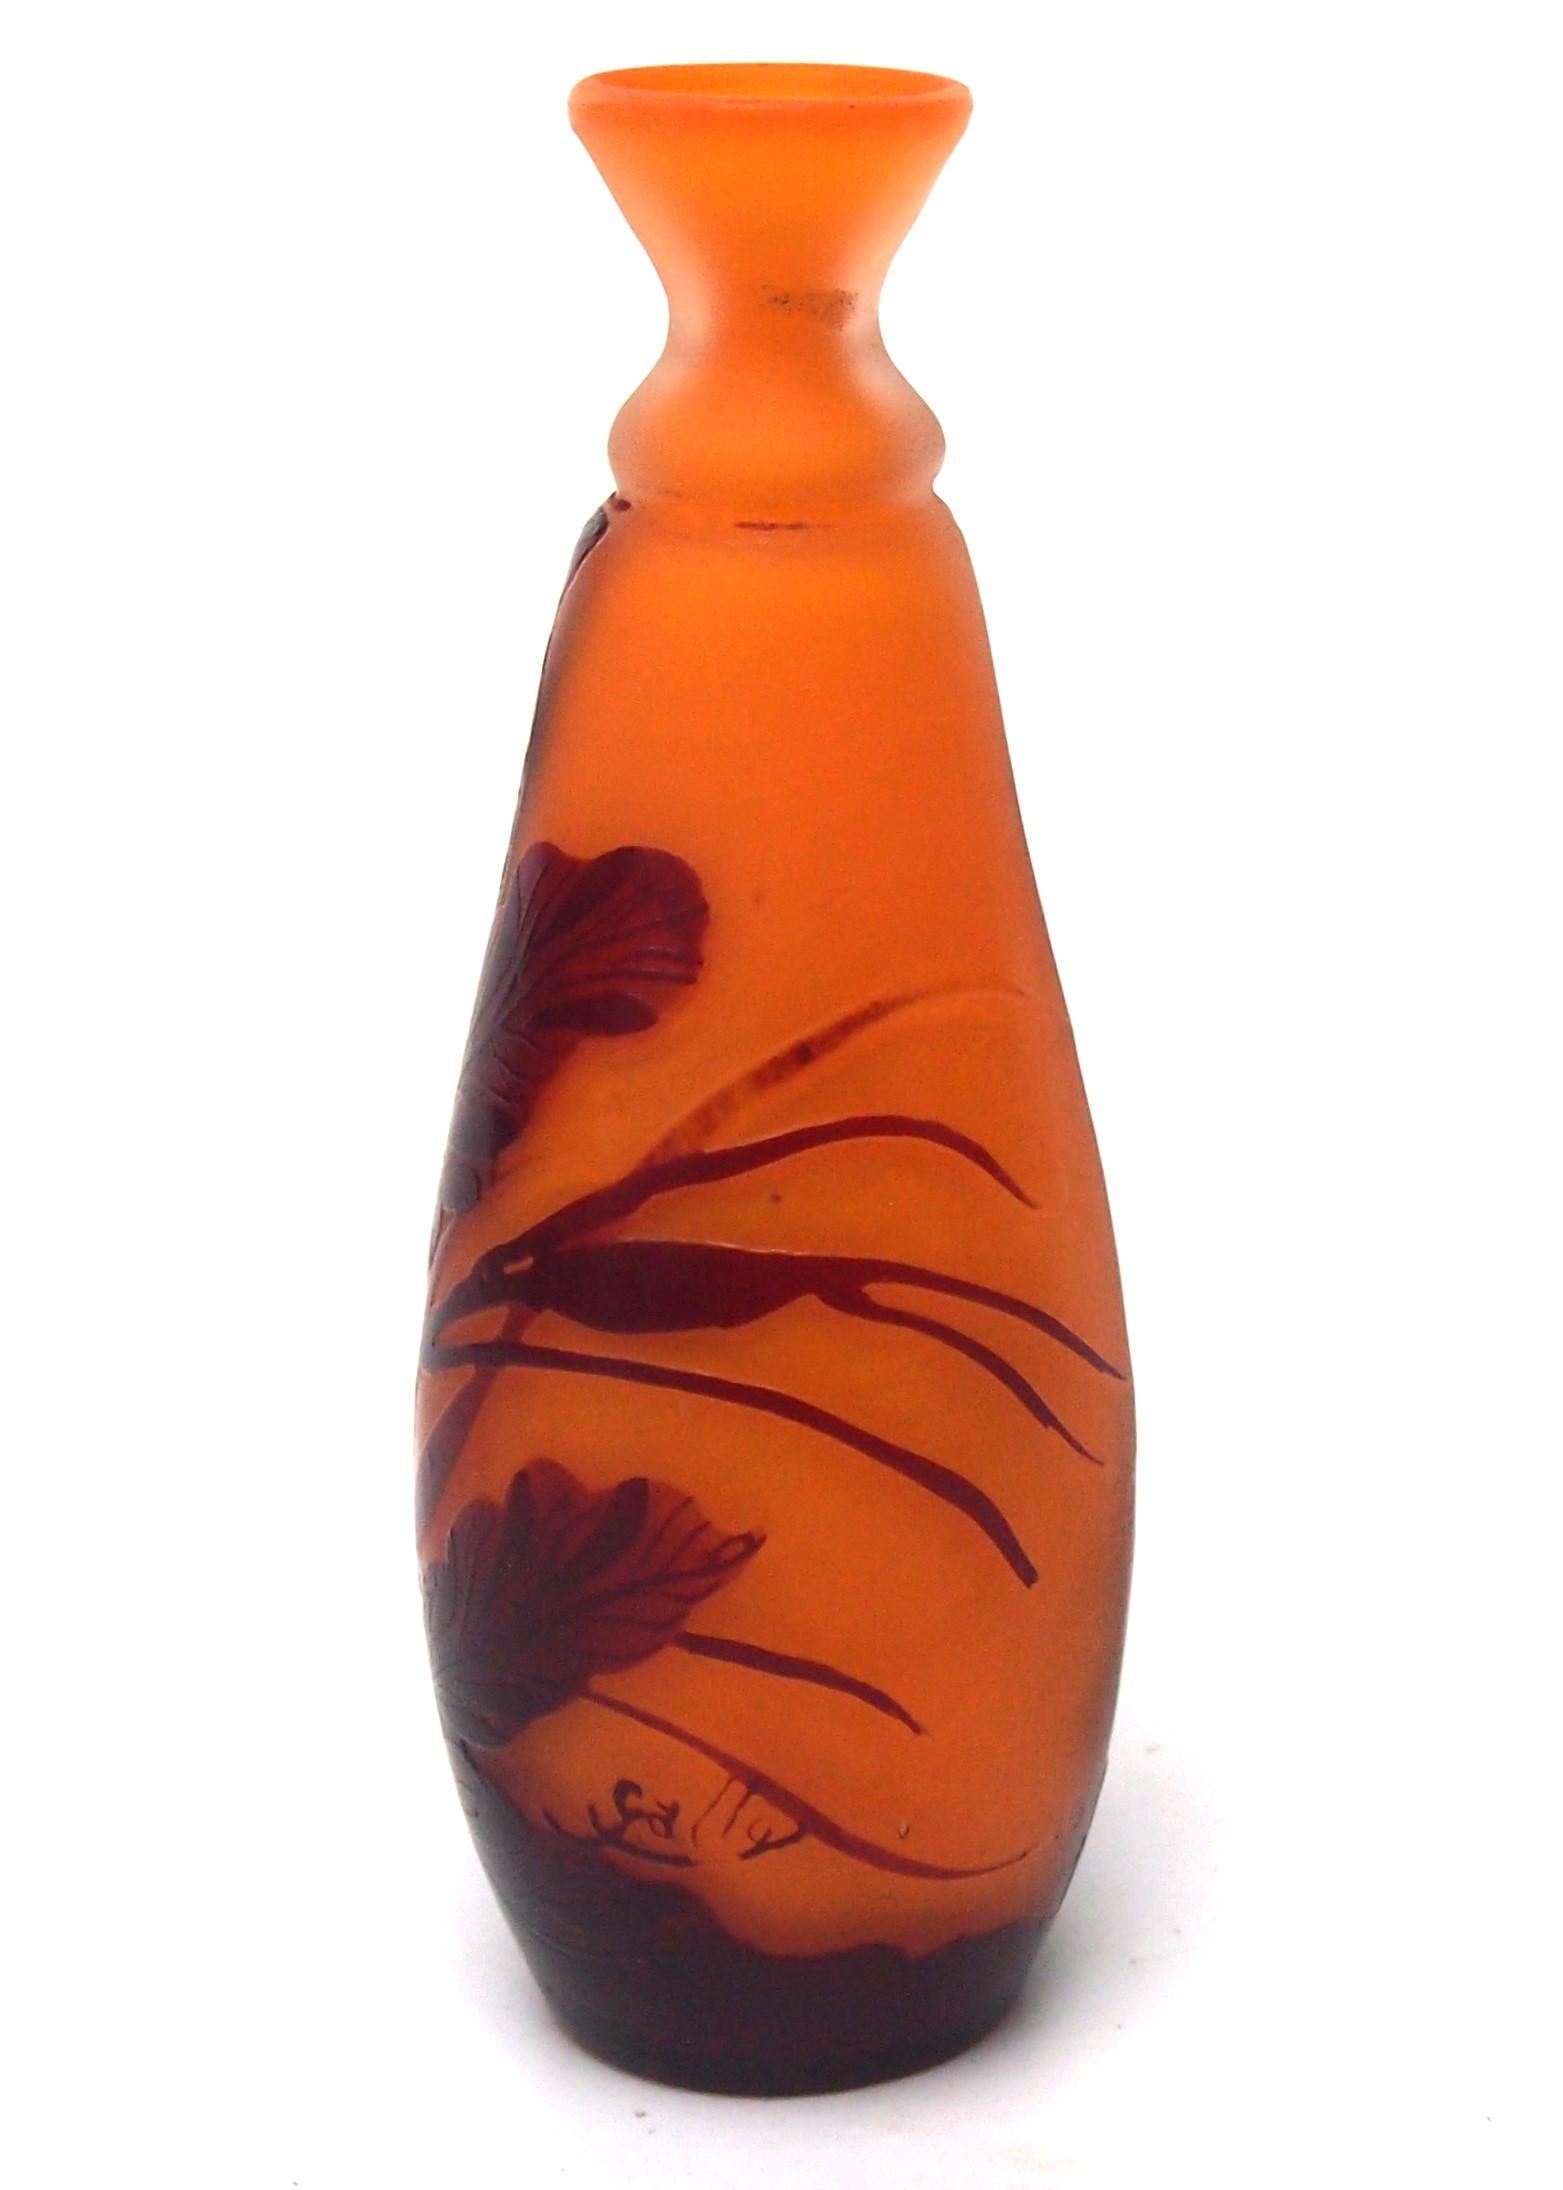 Außergewöhnlich seltene Kamee-Vase aus der Kriegszeit von Emile Galle - in braun über orange. Darstellung von Seegras. Signiert Provost Mk.III siehe letztes Bild für Datierungstabelle.

Im Jahr 1914 brach der Krieg aus und die Deutschen griffen die